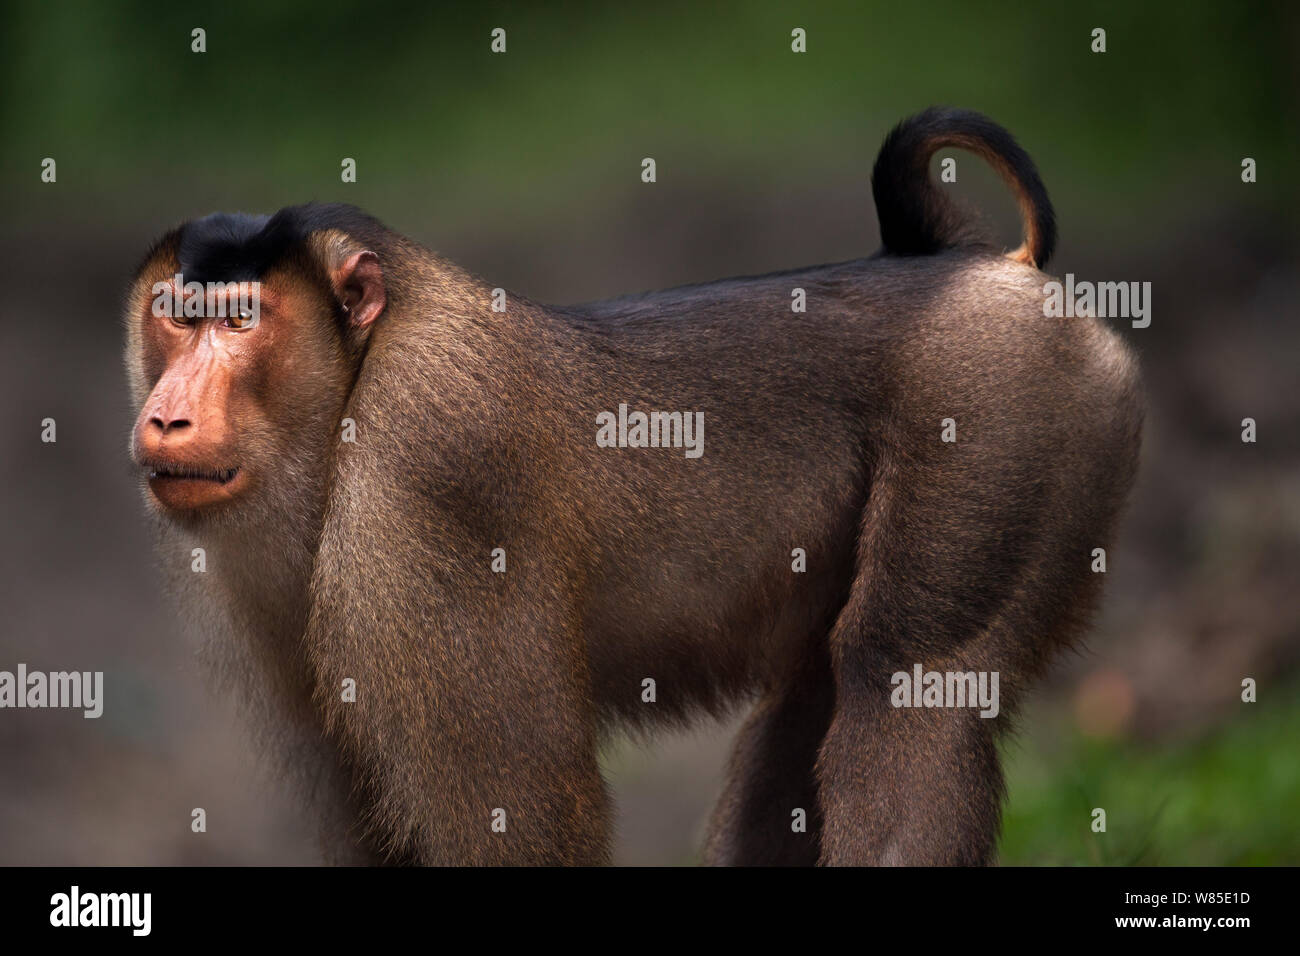 Süd- oder Sunda Schwein-tailed Makaken (Macaca nemestrina) reife männliche Portrait. Wild aber gewohnt ist, und von der örtlichen Bevölkerung ernährt. Gunung Leuser Nationalpark, Sumatra, Indonesien. Stockfoto